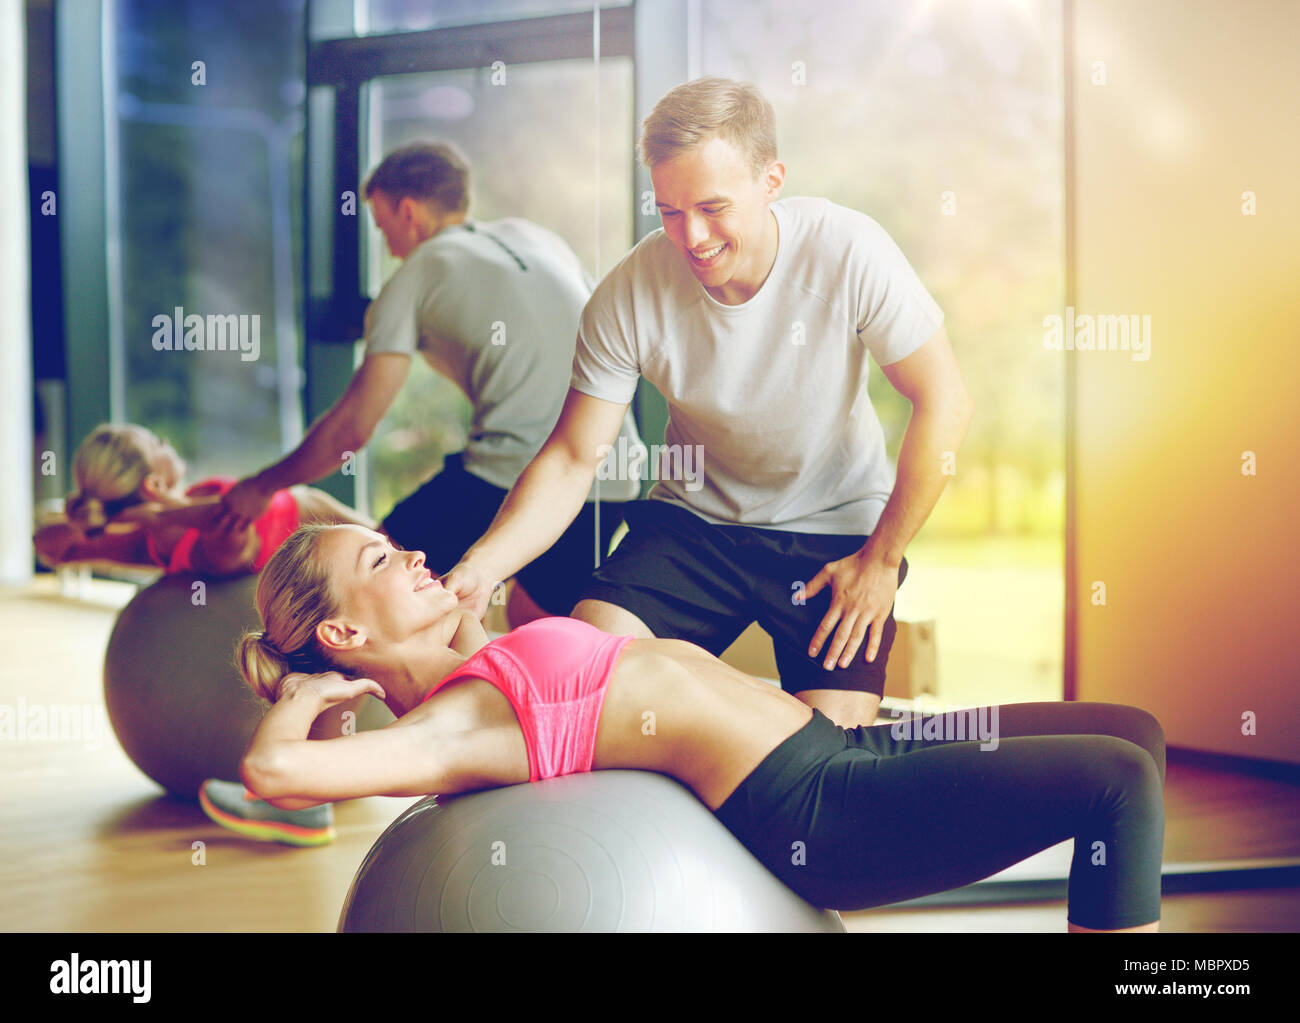 lächelnde junge Frau mit personal Trainer im Fitness-Studio Stockfoto